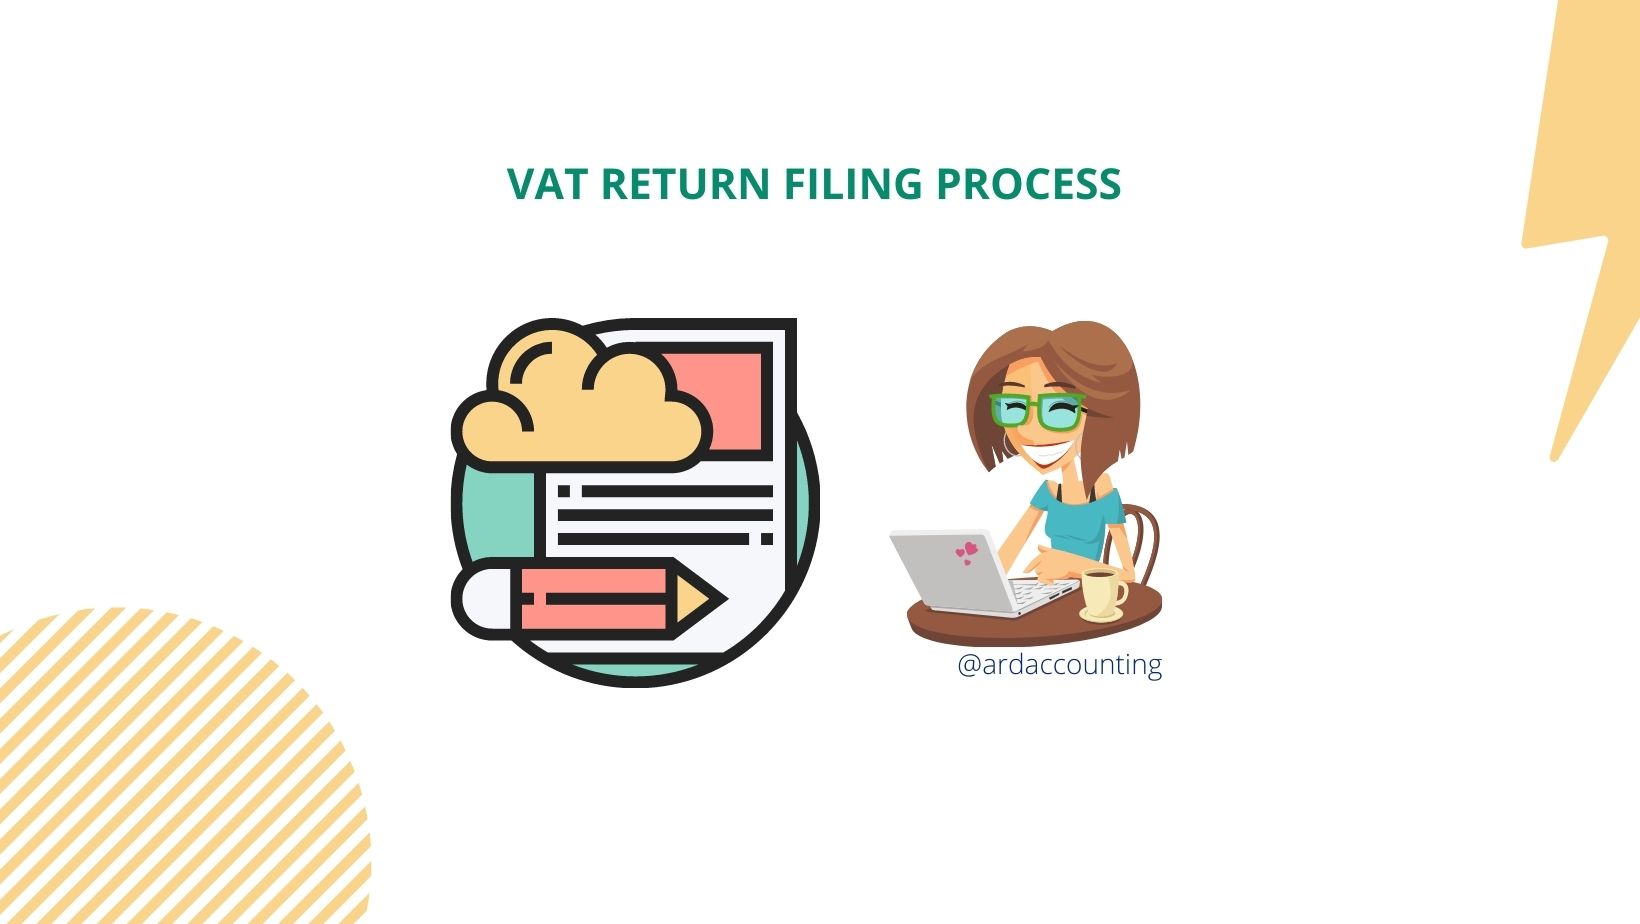 VAT RETURN IN UAE